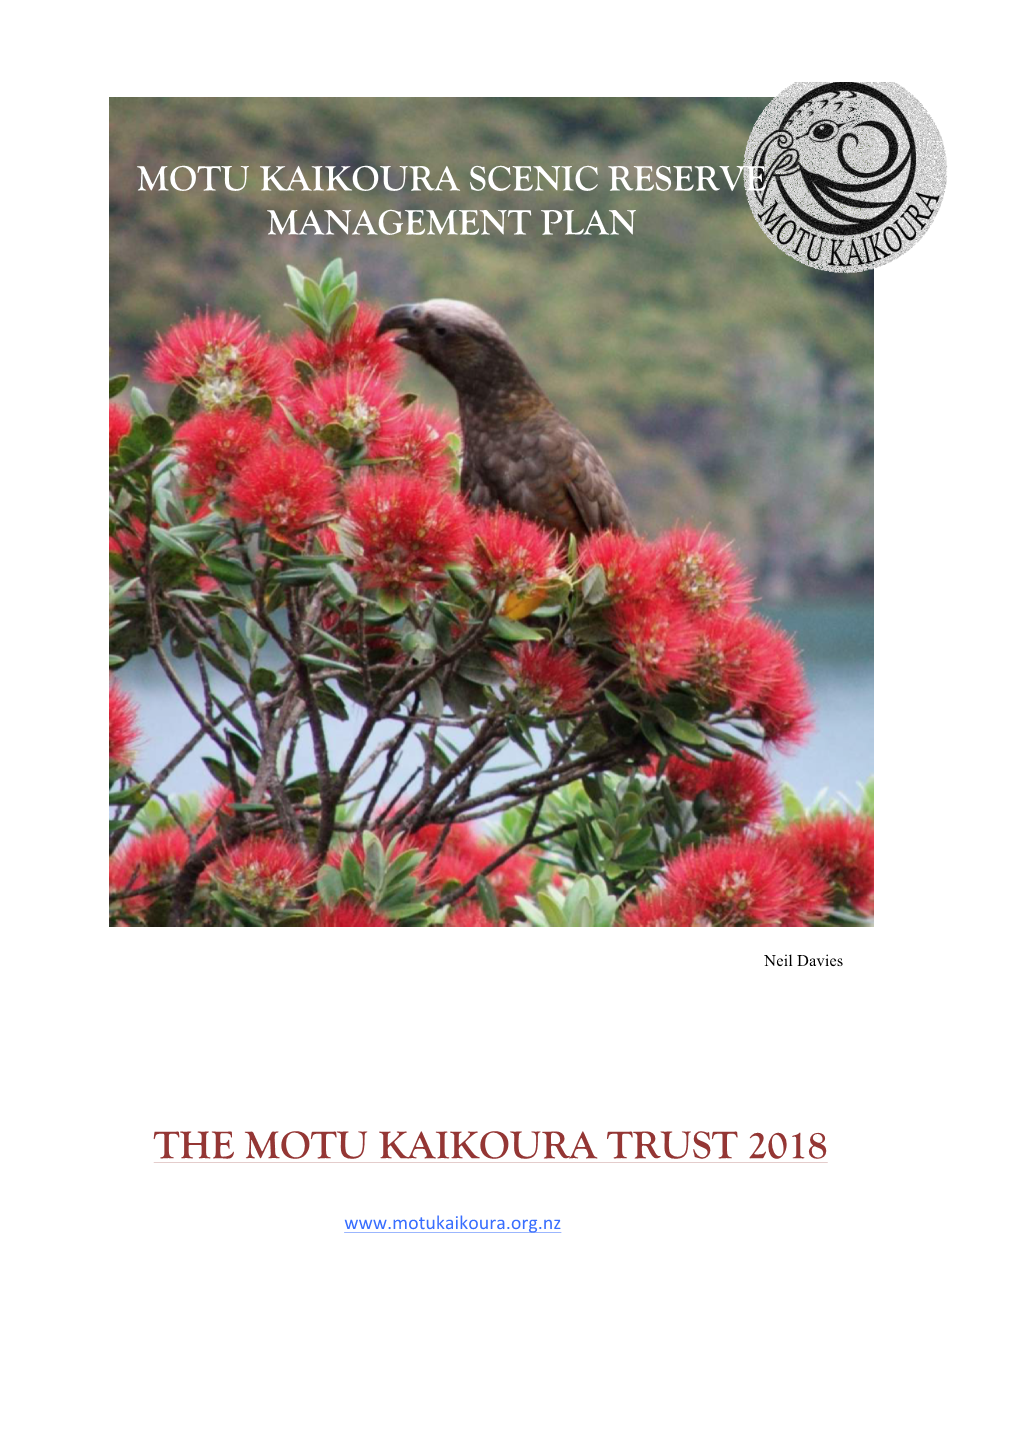 The Motu Kaikoura Trust 2018